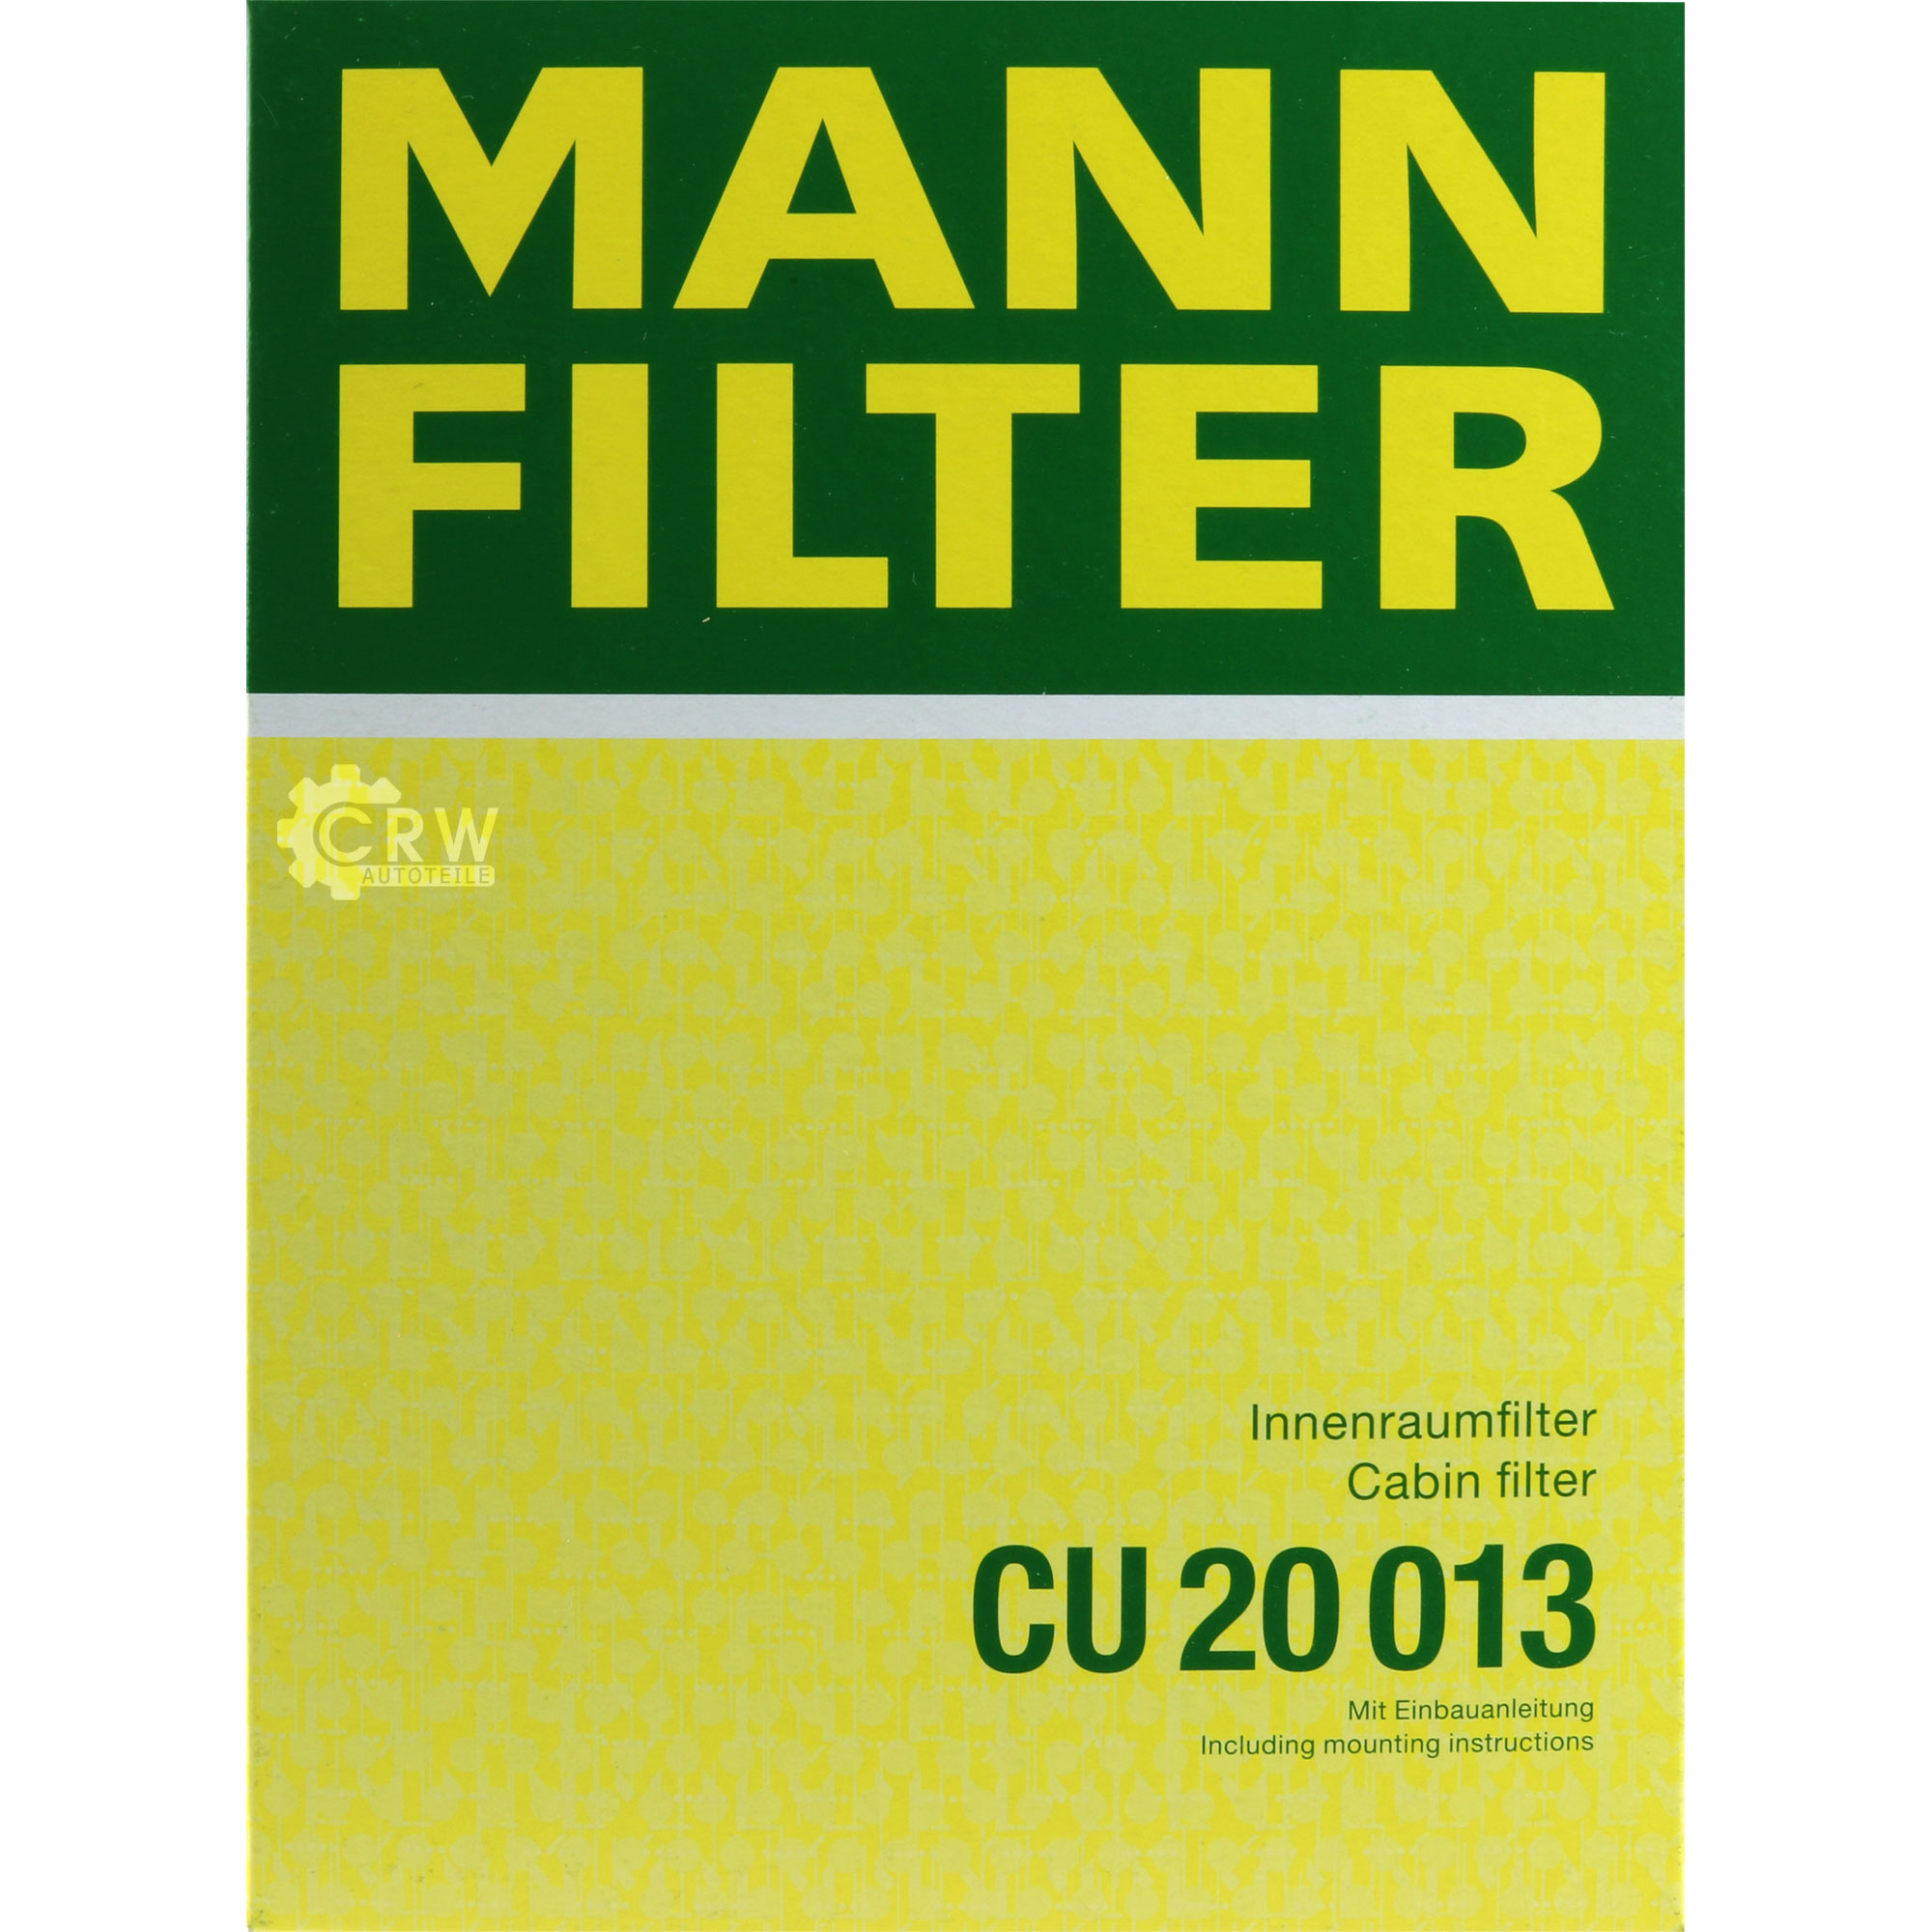 MANN-FILTER Innenraumfilter Pollenfilter CU 20 013